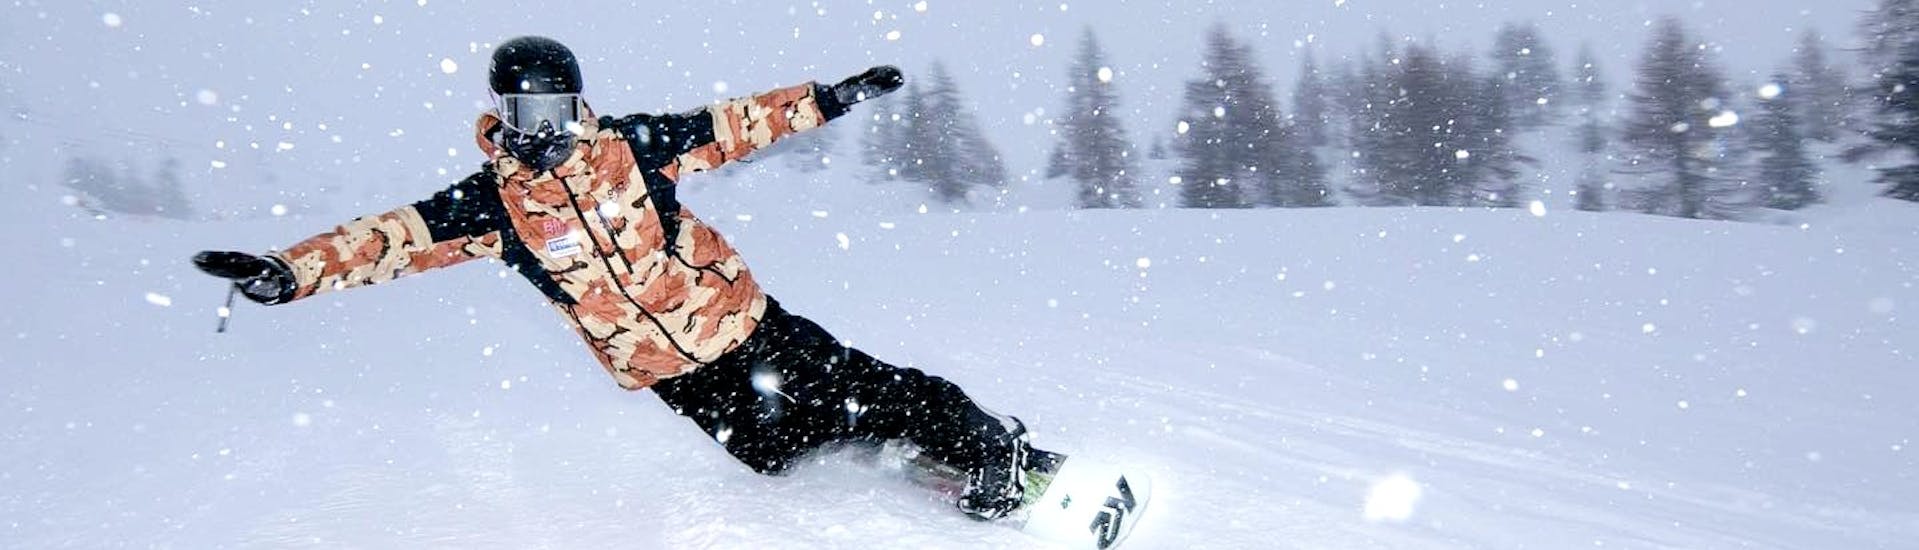 Uno snowboarder in pista durante le Lezioni private di snowboard per tutte le età e i livelli con Scuola di Snowboard Zebra Madonna di Campiglio.